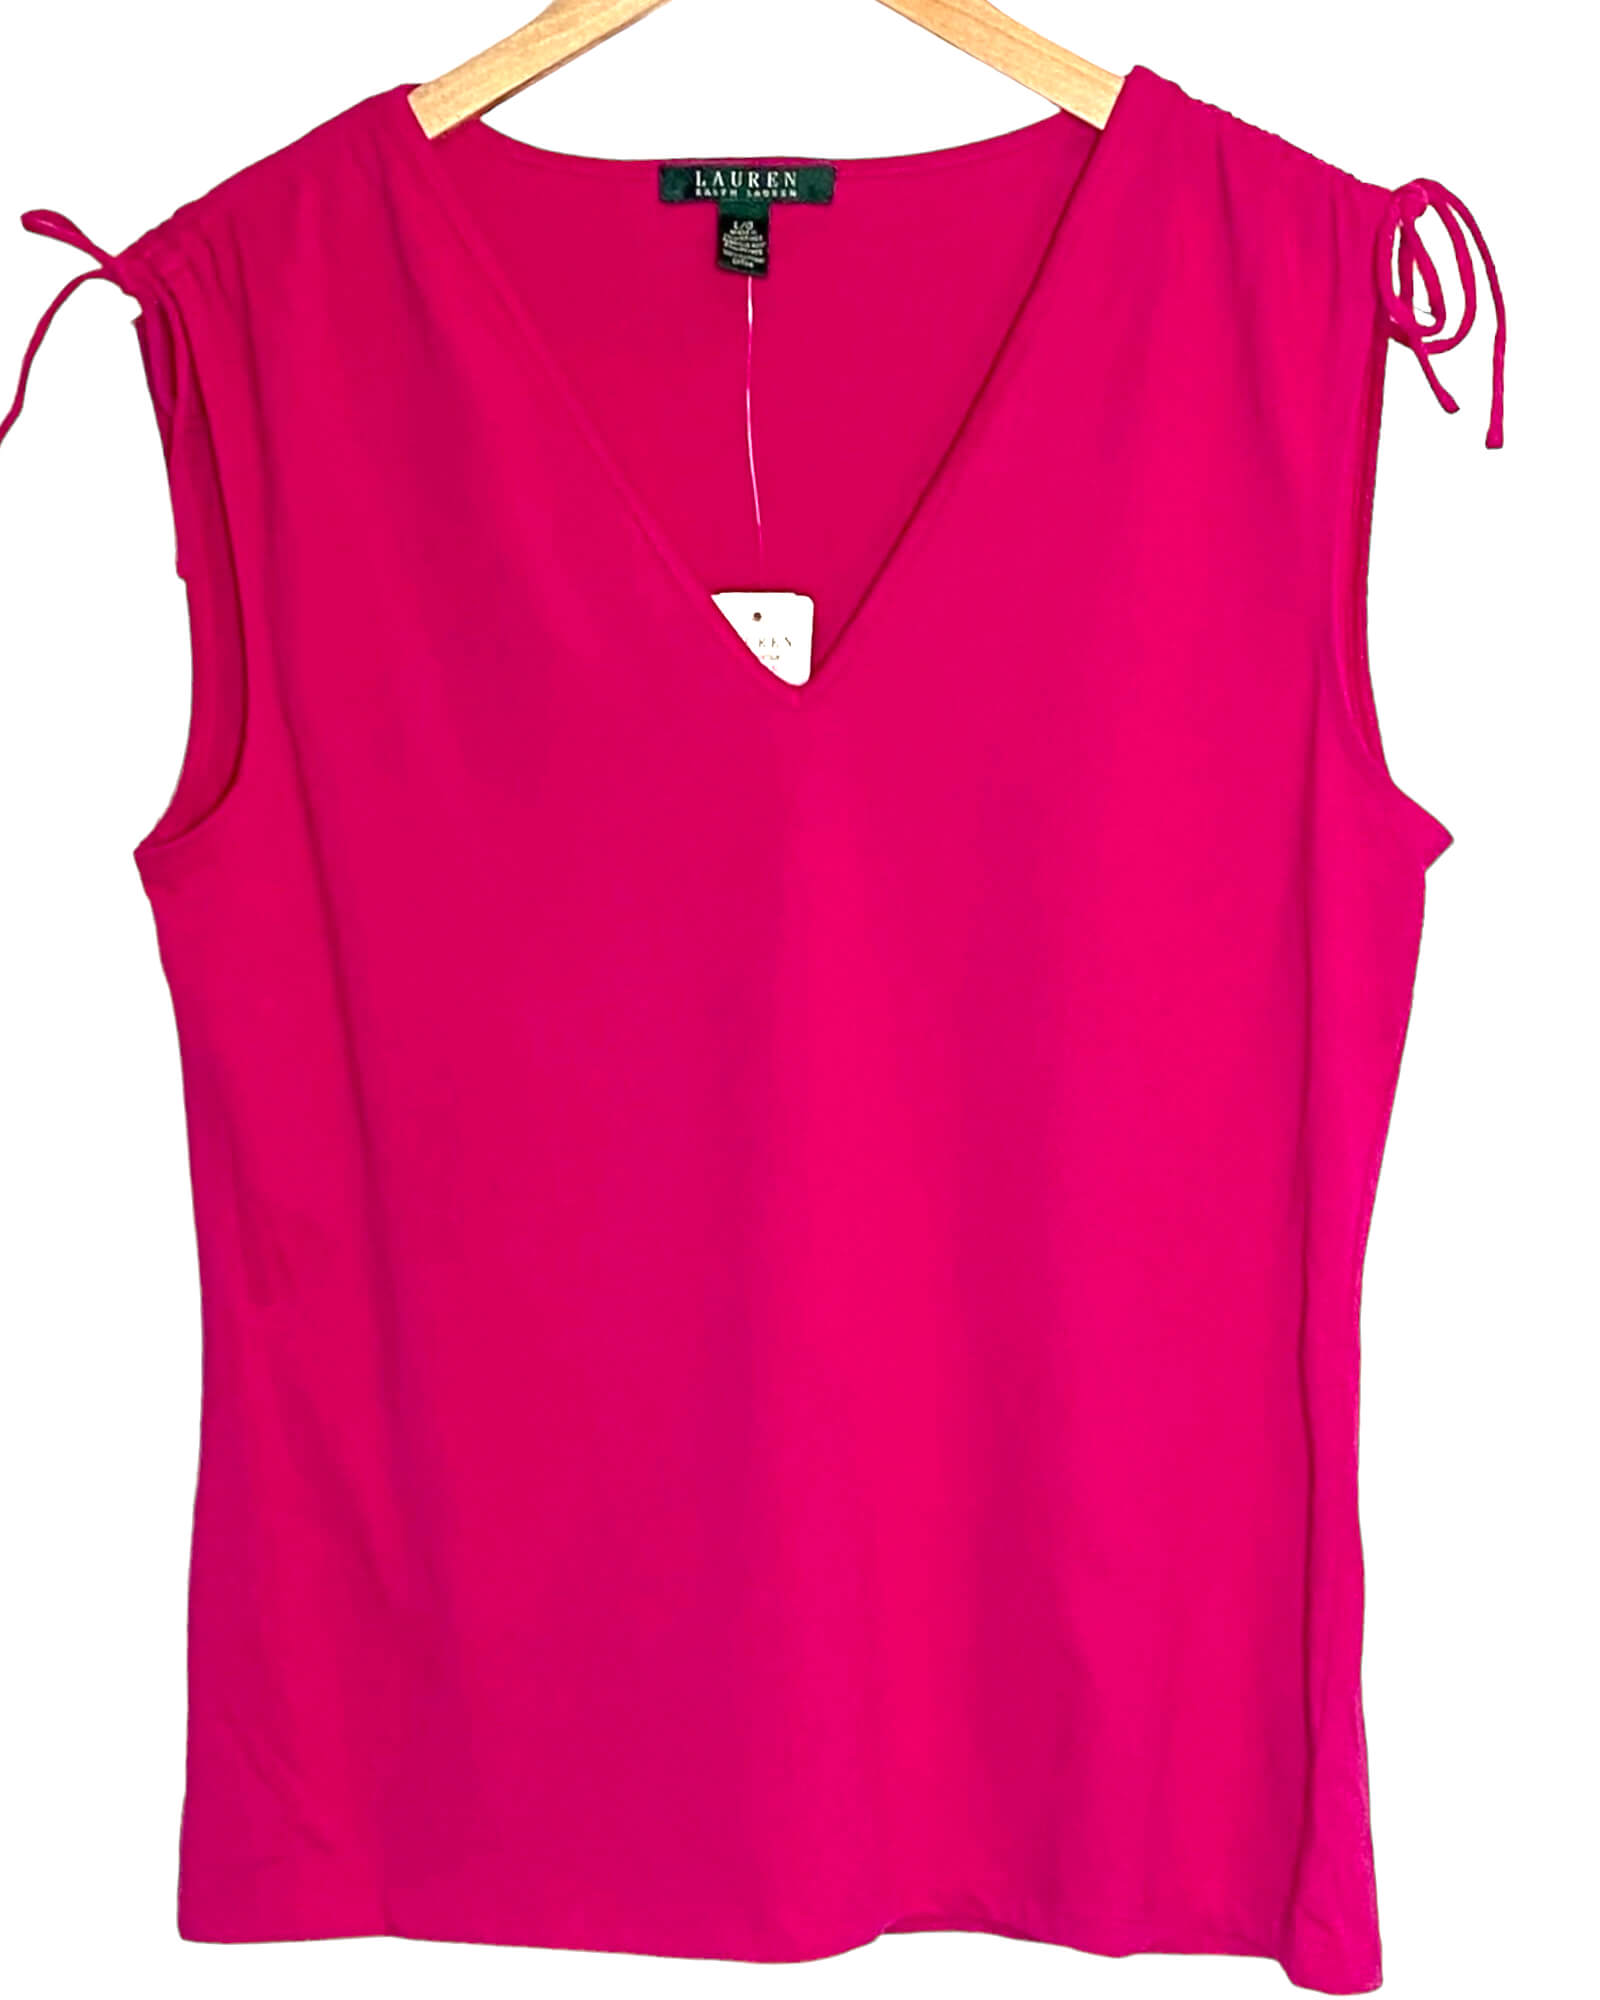 Bright Spring LAUREN by RALPH LAUREN sleeveless aster pink tie-shoulder top tee t-shirt